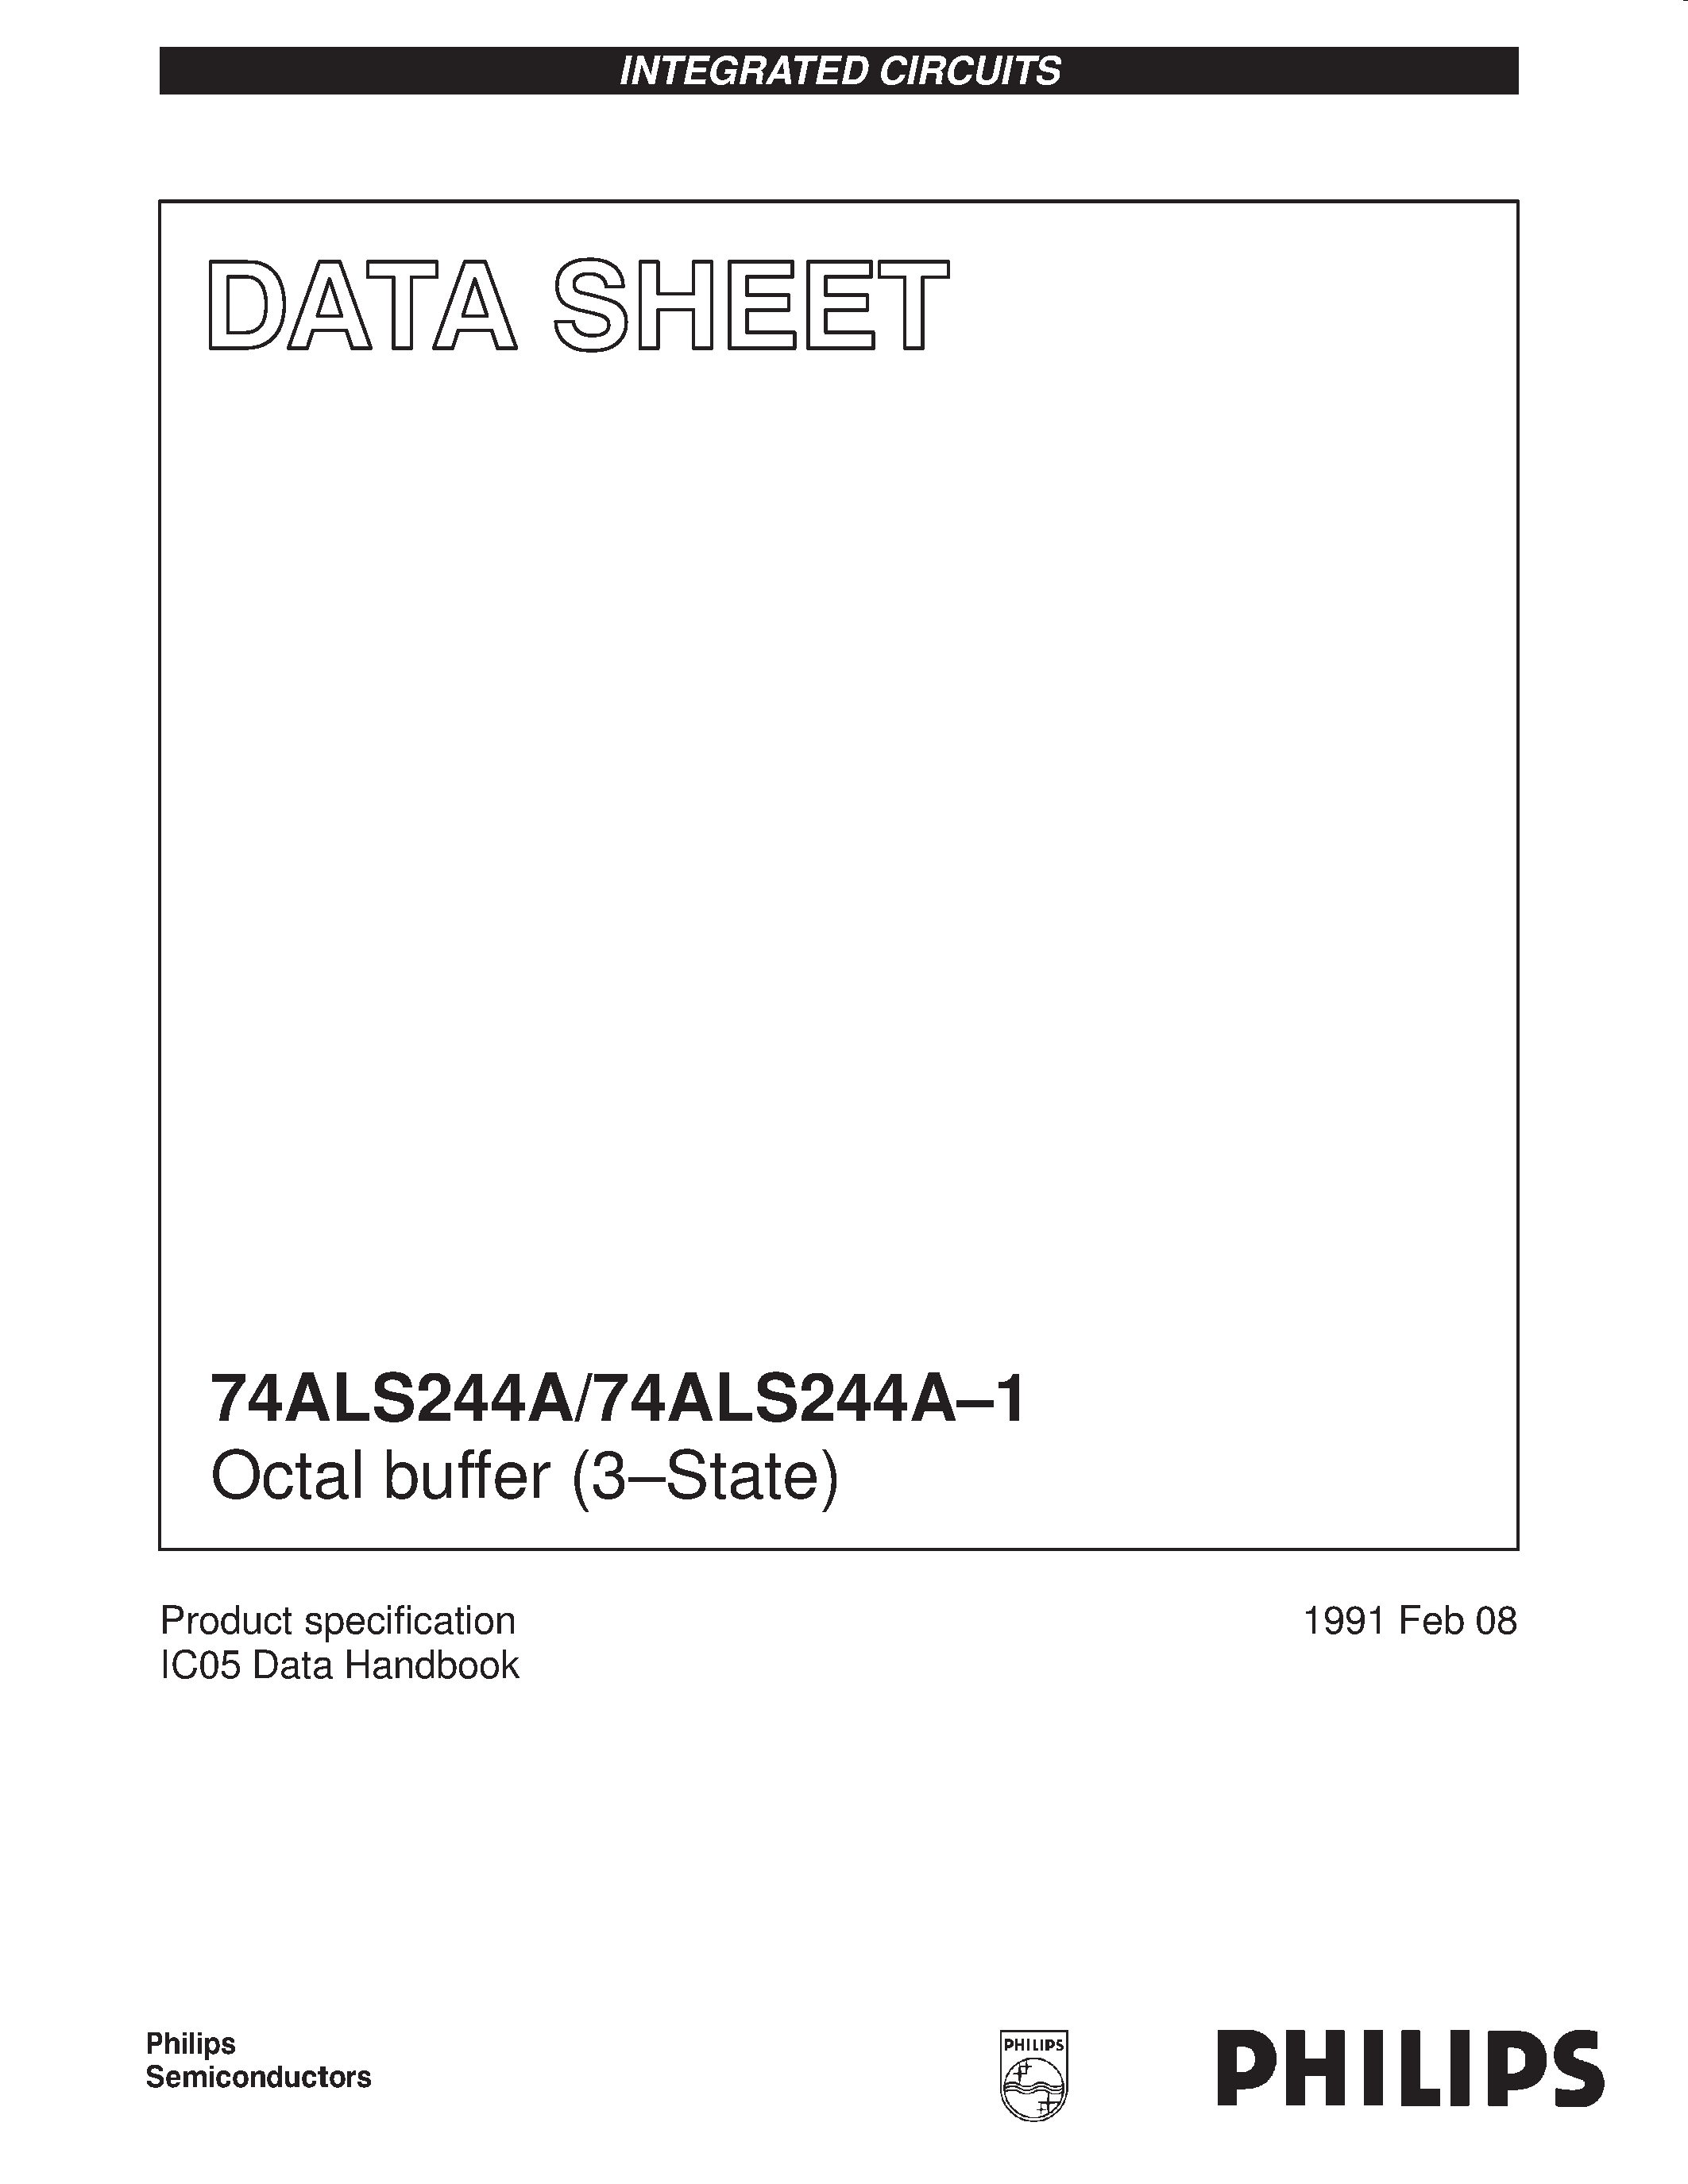 Даташит 744ALS244A-1D - Octal buffer 3-State страница 1